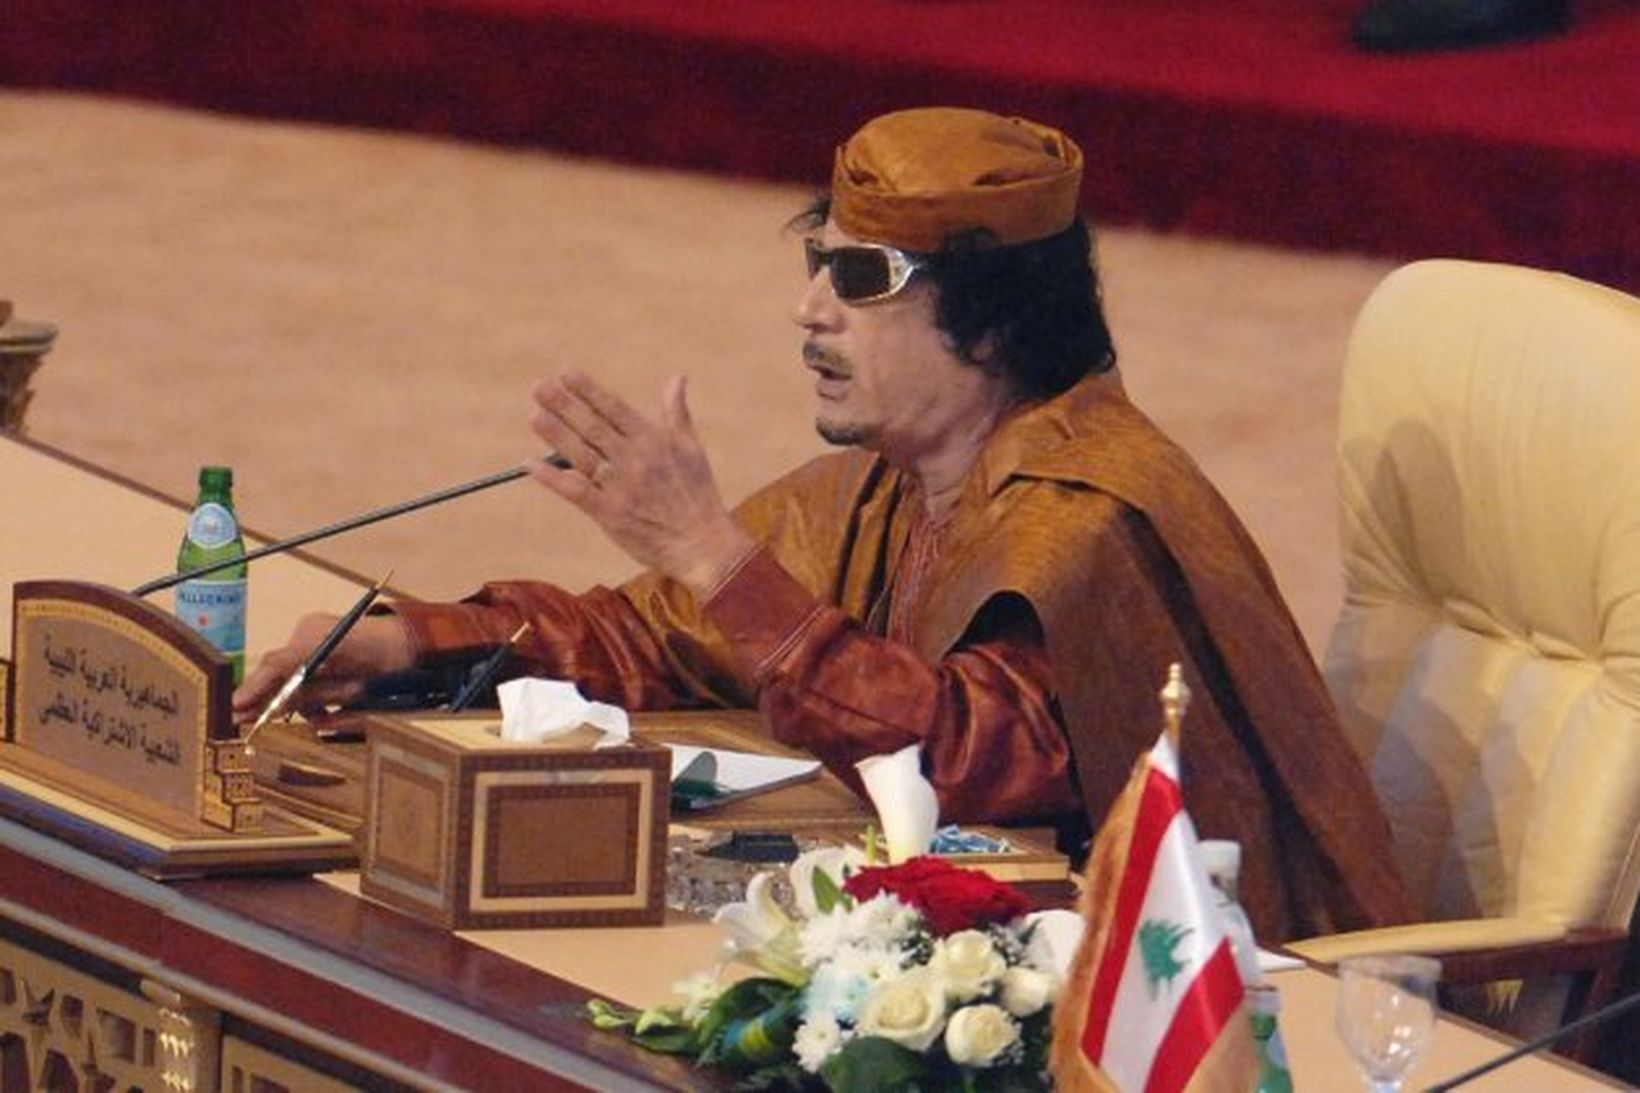 Gaddafi lét Abdullah konung heyra það og gekk svo út …